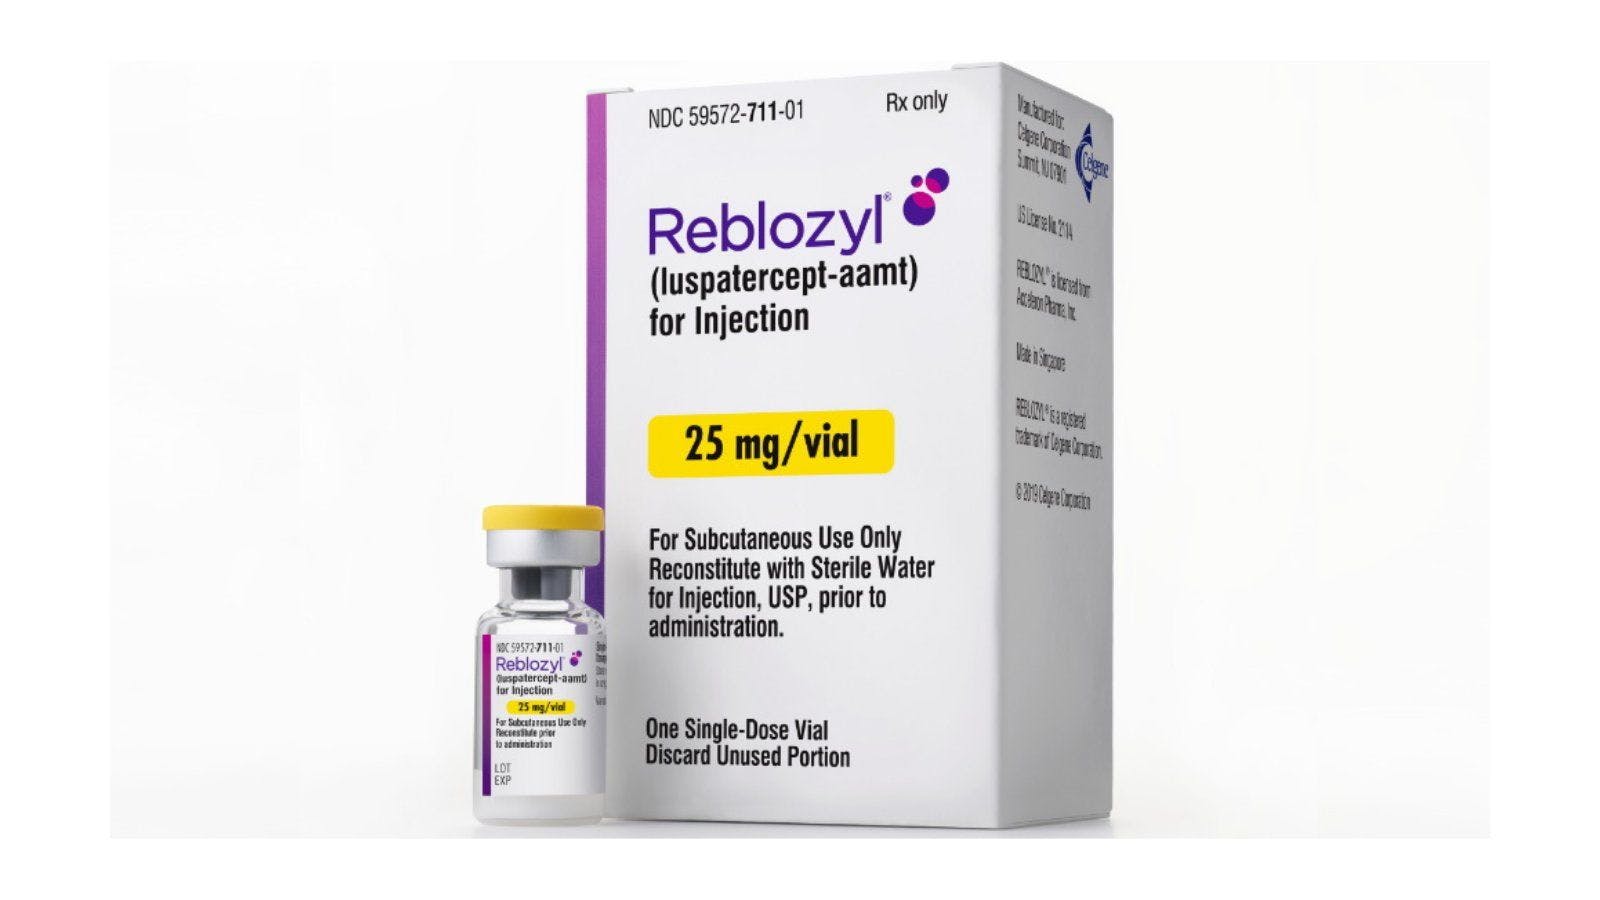 BMS Updates Safety Label of Reblozyl